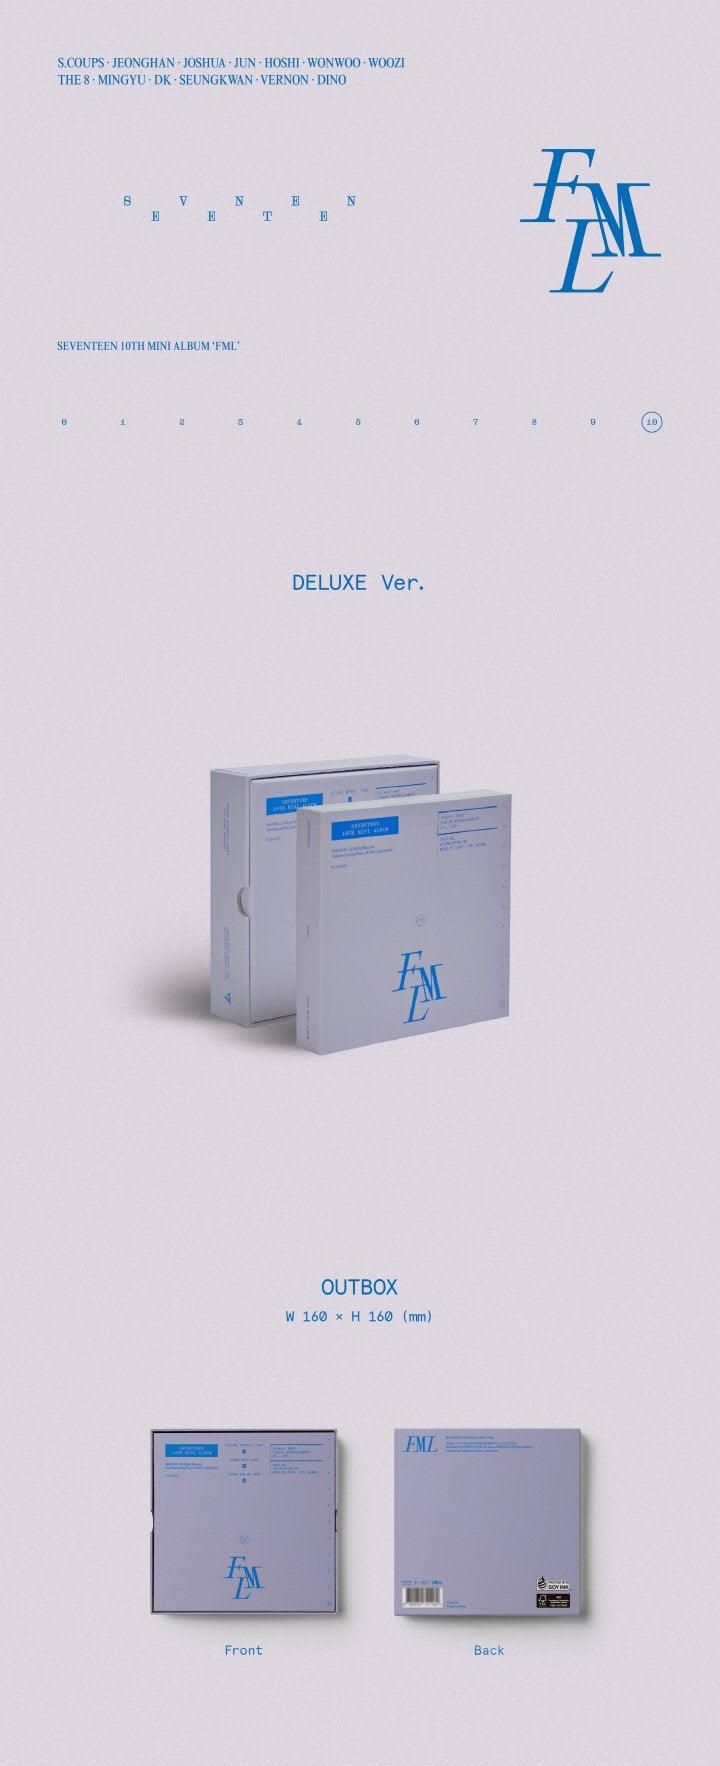 SEVENTEEN - Mini Album Vol.10 [FML] (Edition Deluxe) - KAEPJJANG SHOP (캡짱 숍)